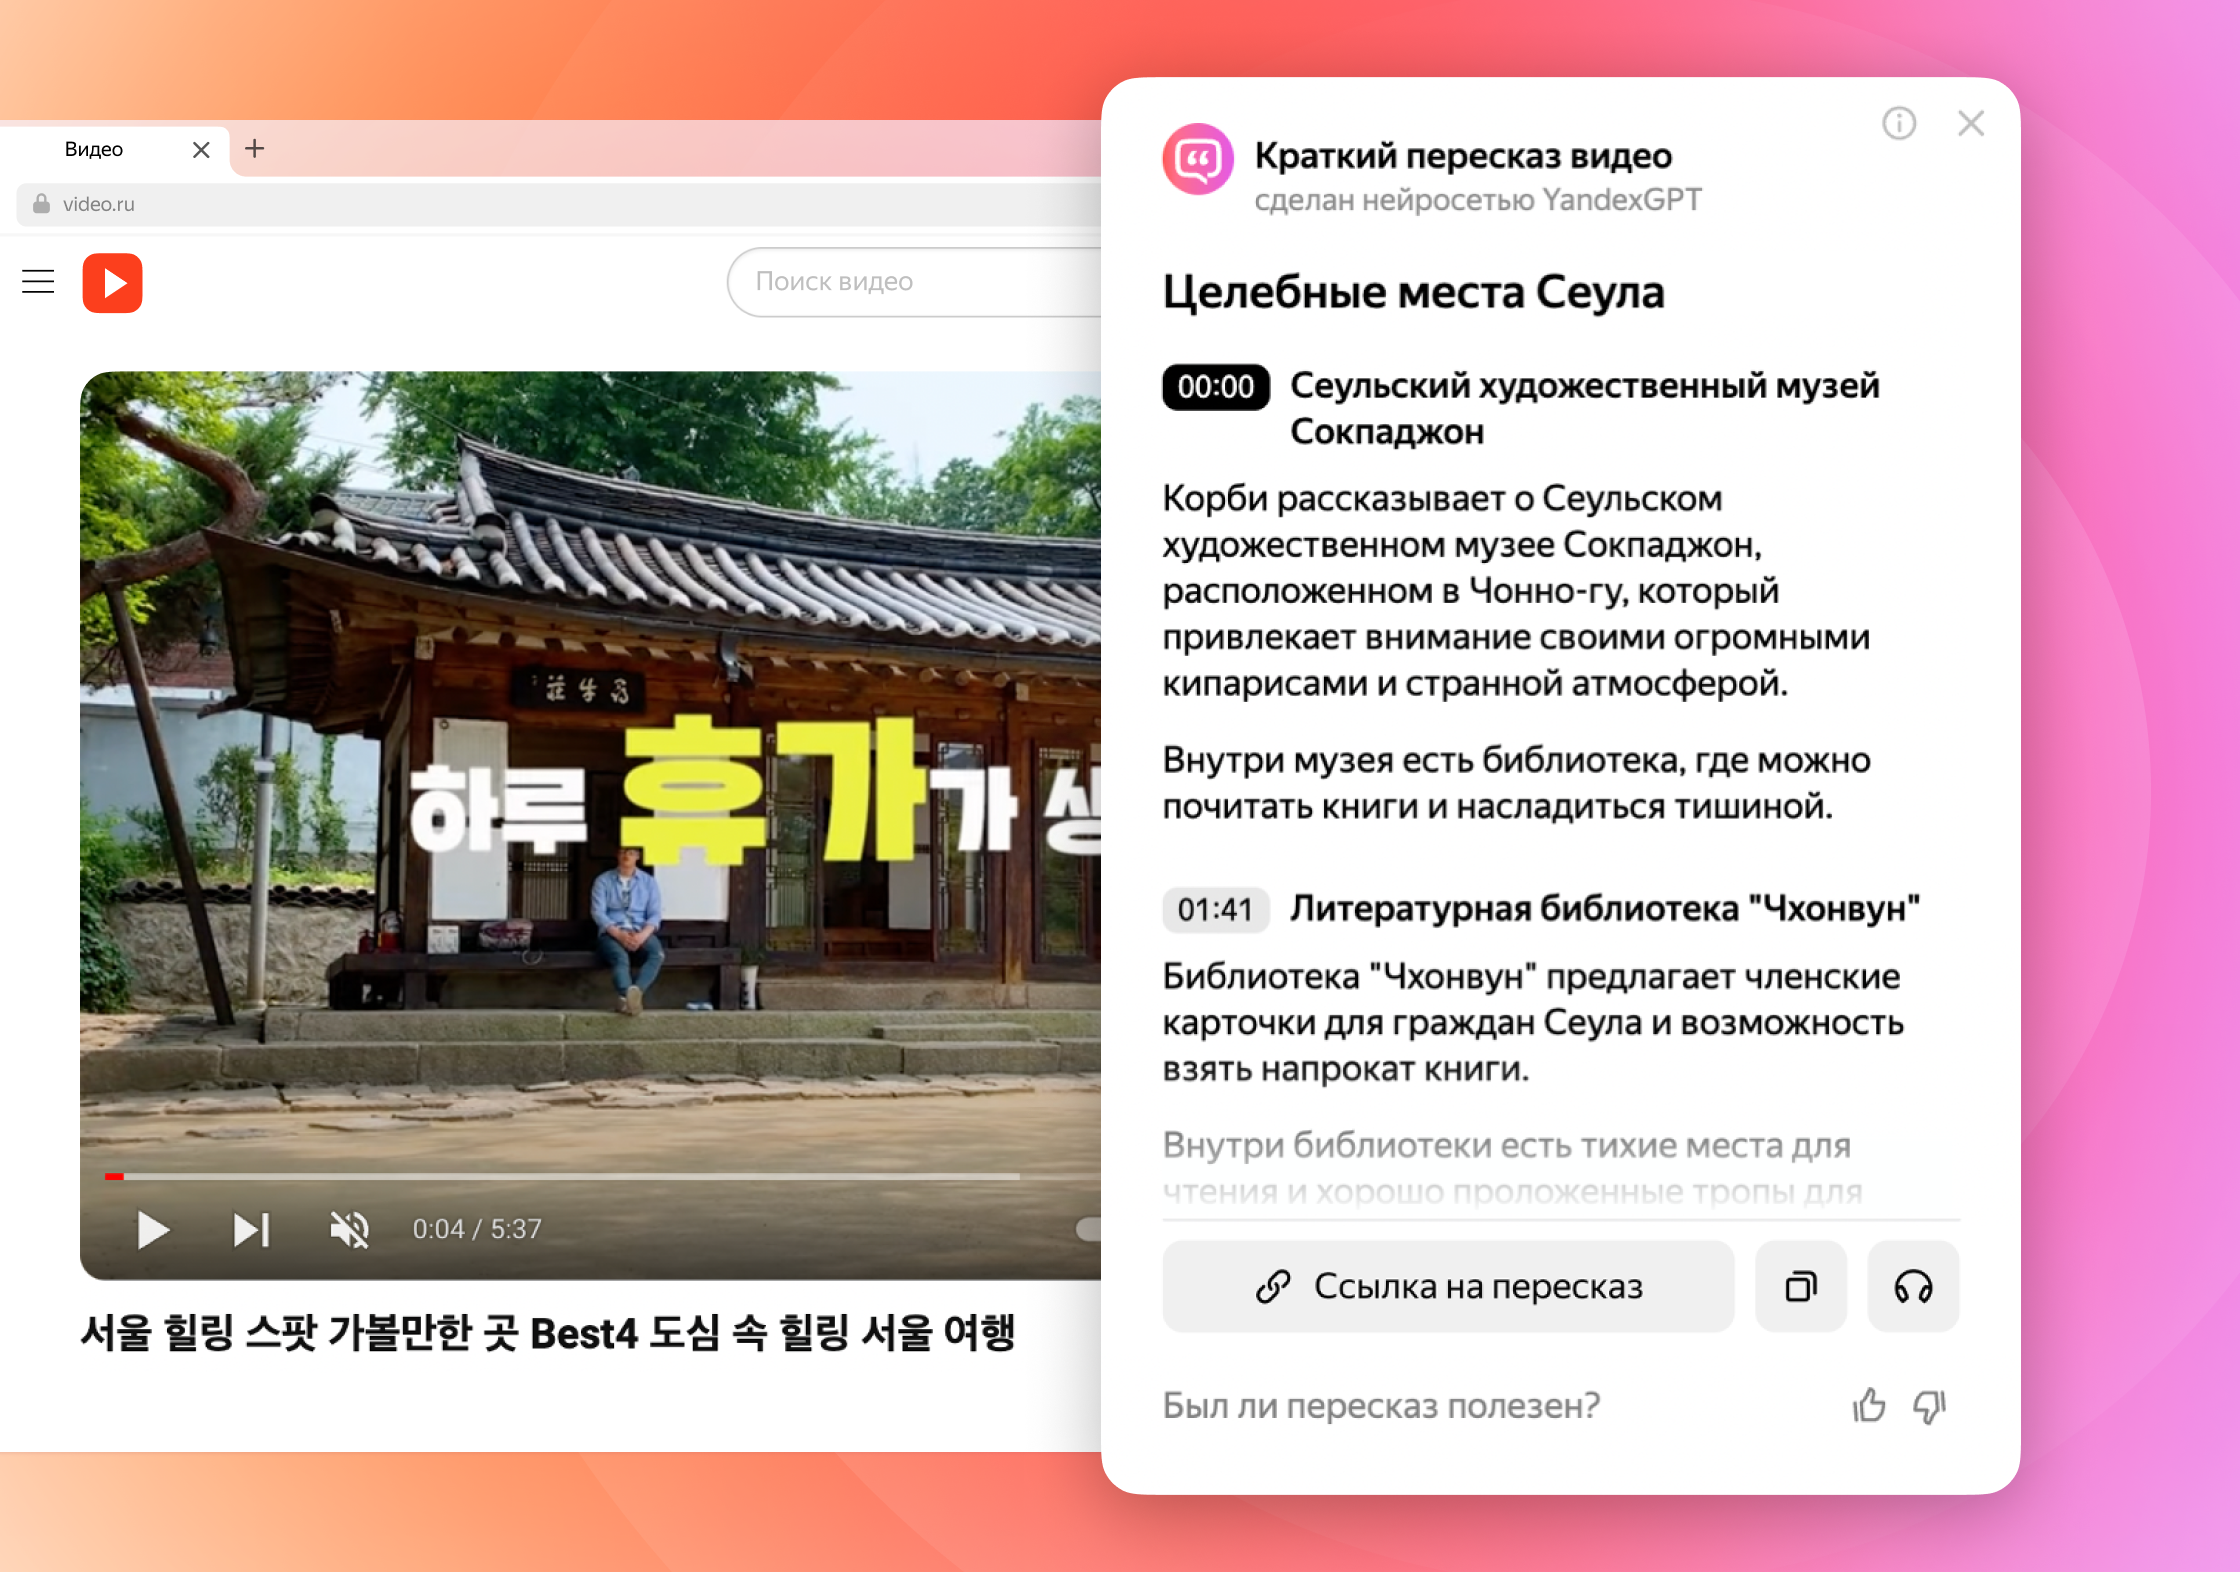 Помощь с текстом, перевод видео с японского и корейского, распознавание QR-кодов — что умеет обновлённый Яндекс Браузер - 4